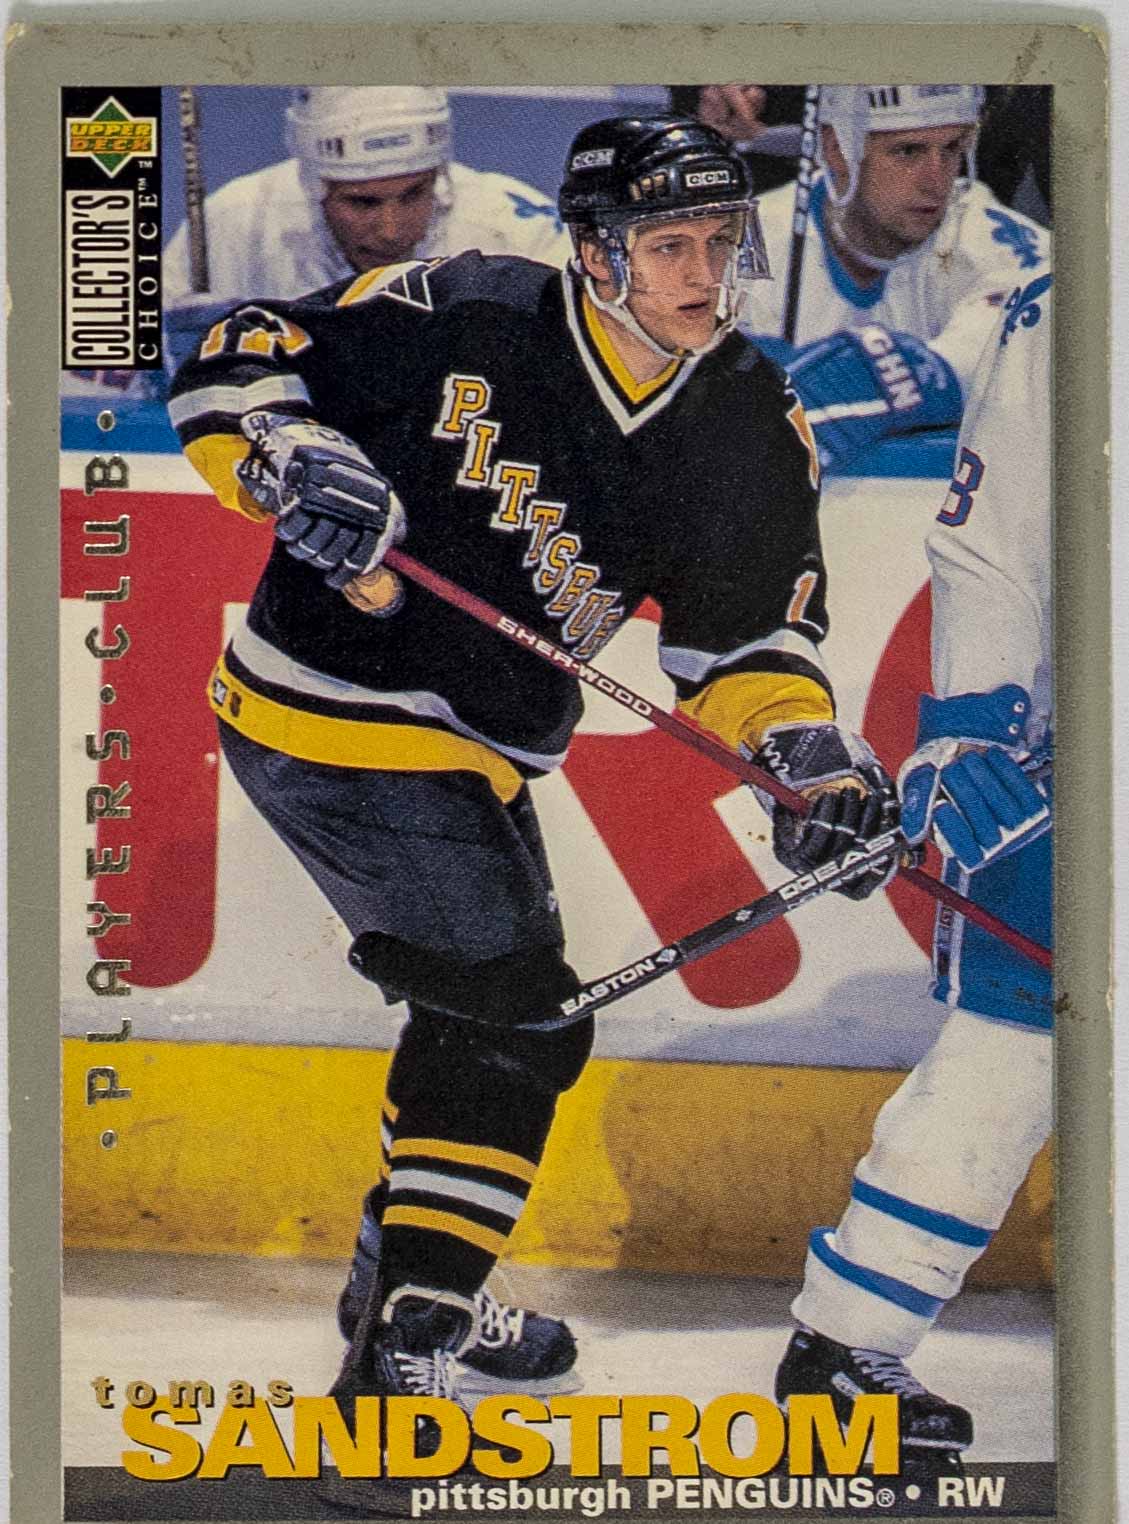 Hokejová kartička, Tomas Sandstrom, Pittsburgh Penguins, 1995